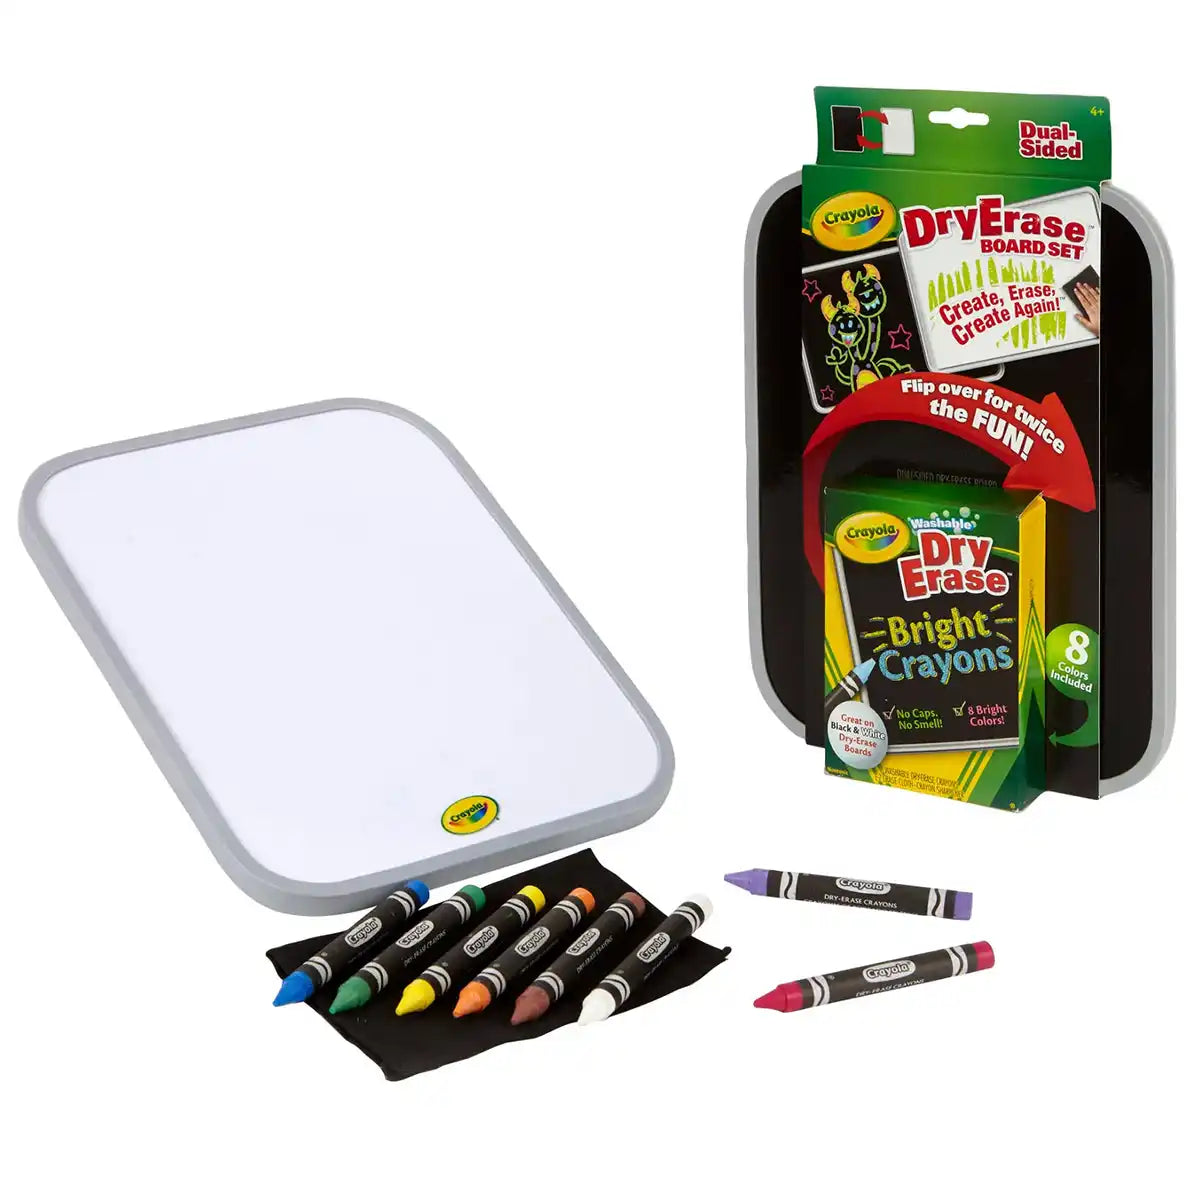 Crayola - Dry Erase Dual Sided Board Set